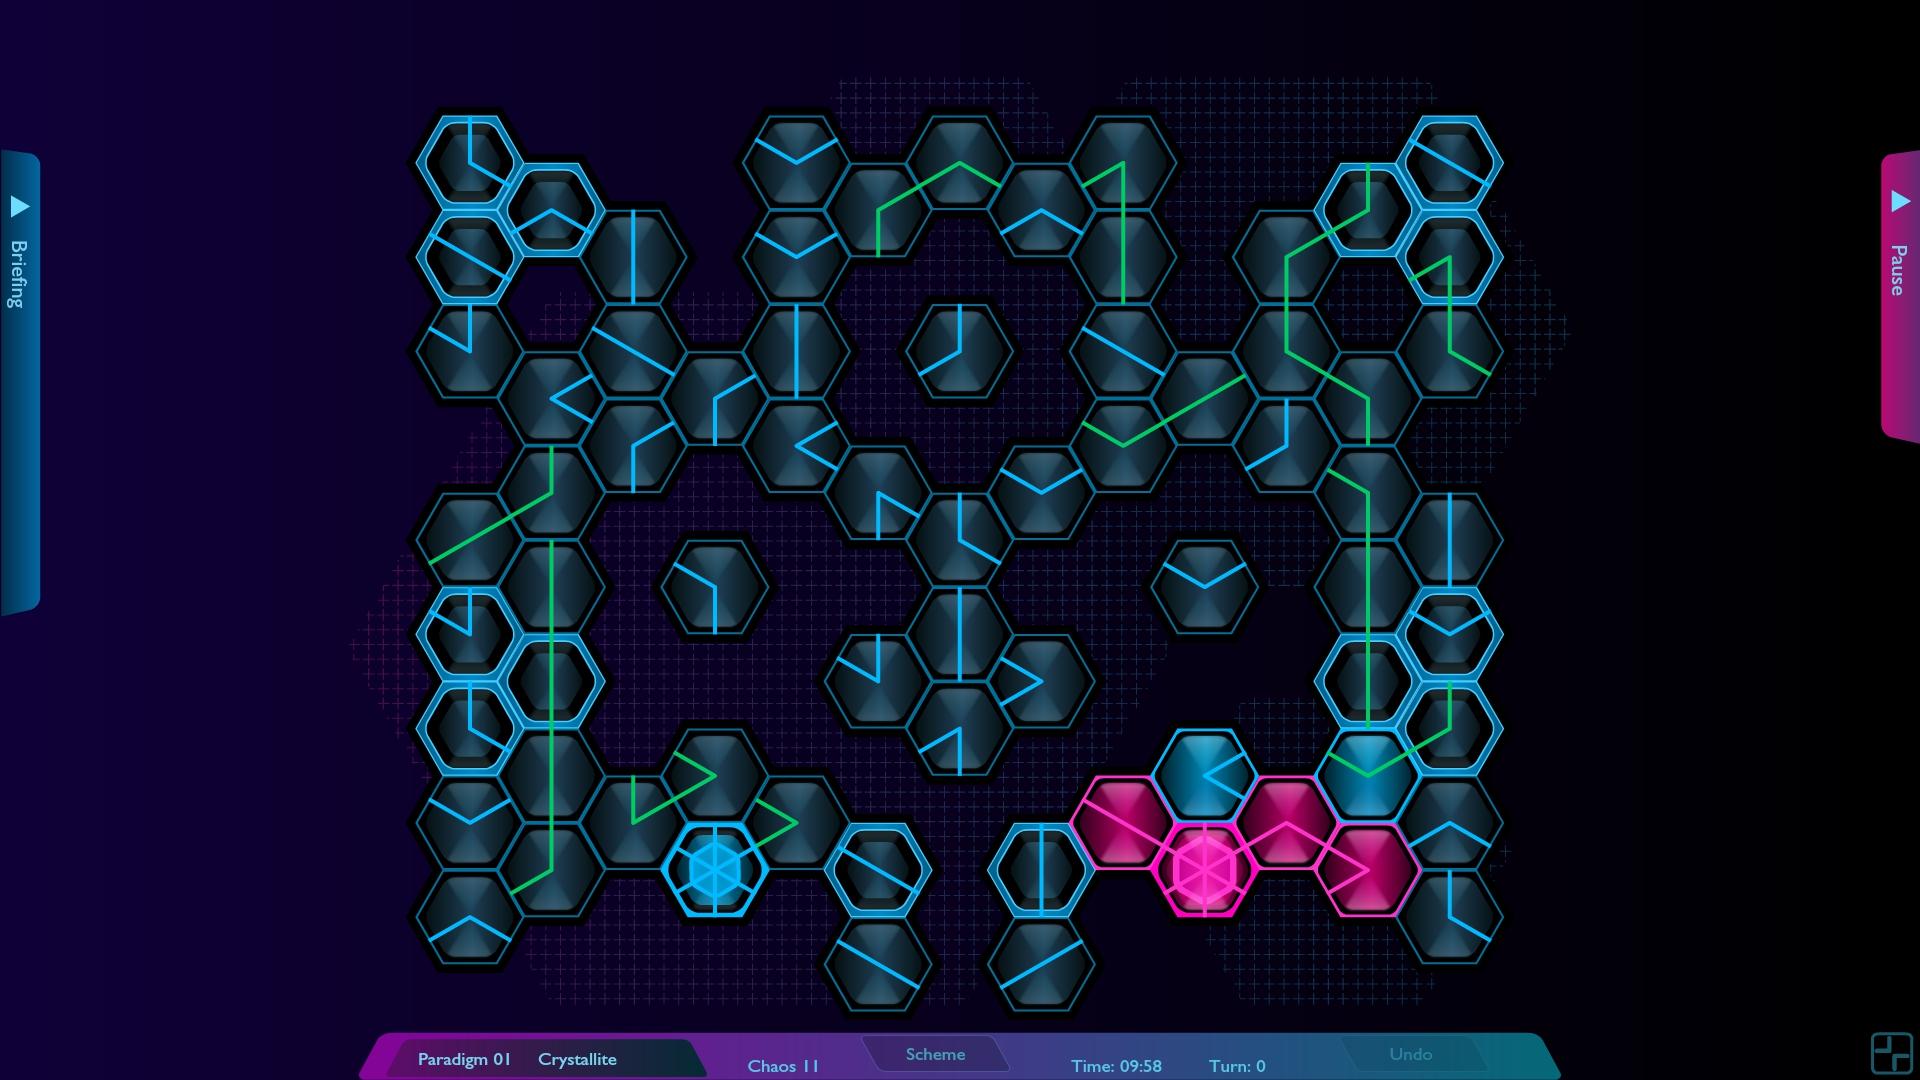 Screenshot №5 from game Hexoscope